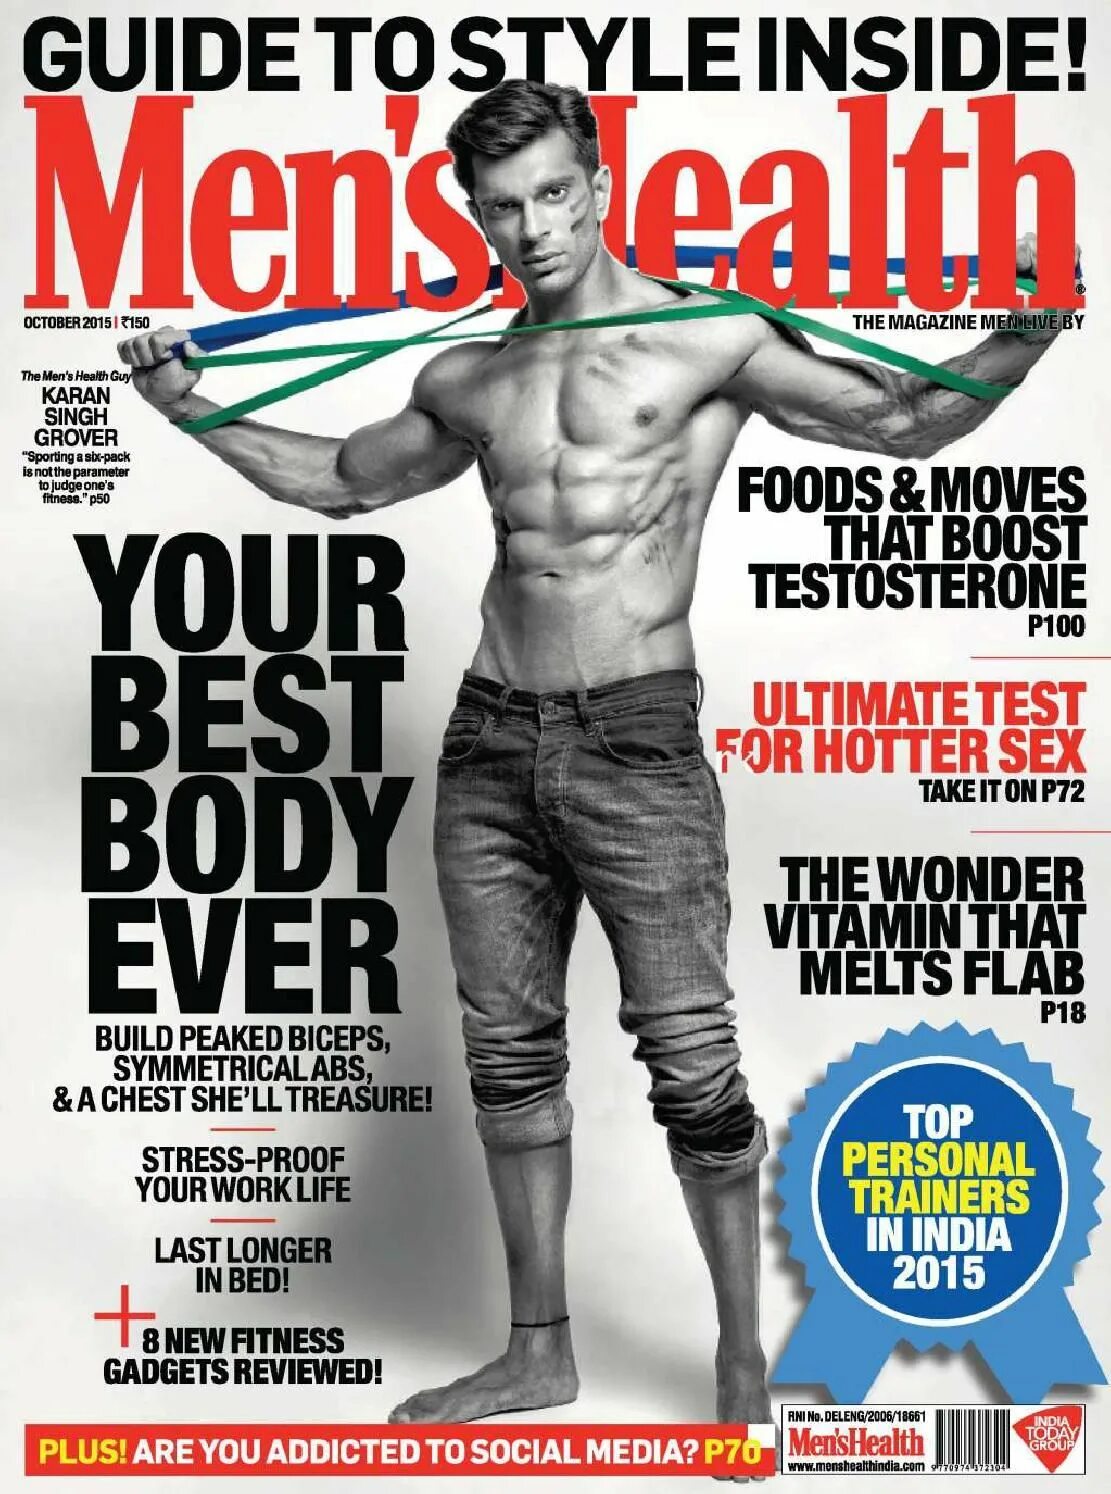 Обложка журнала Менс Хелс. Обложки Менс Хелс 2006. Журнал men's Health. Men's Health обложки. Men magazine